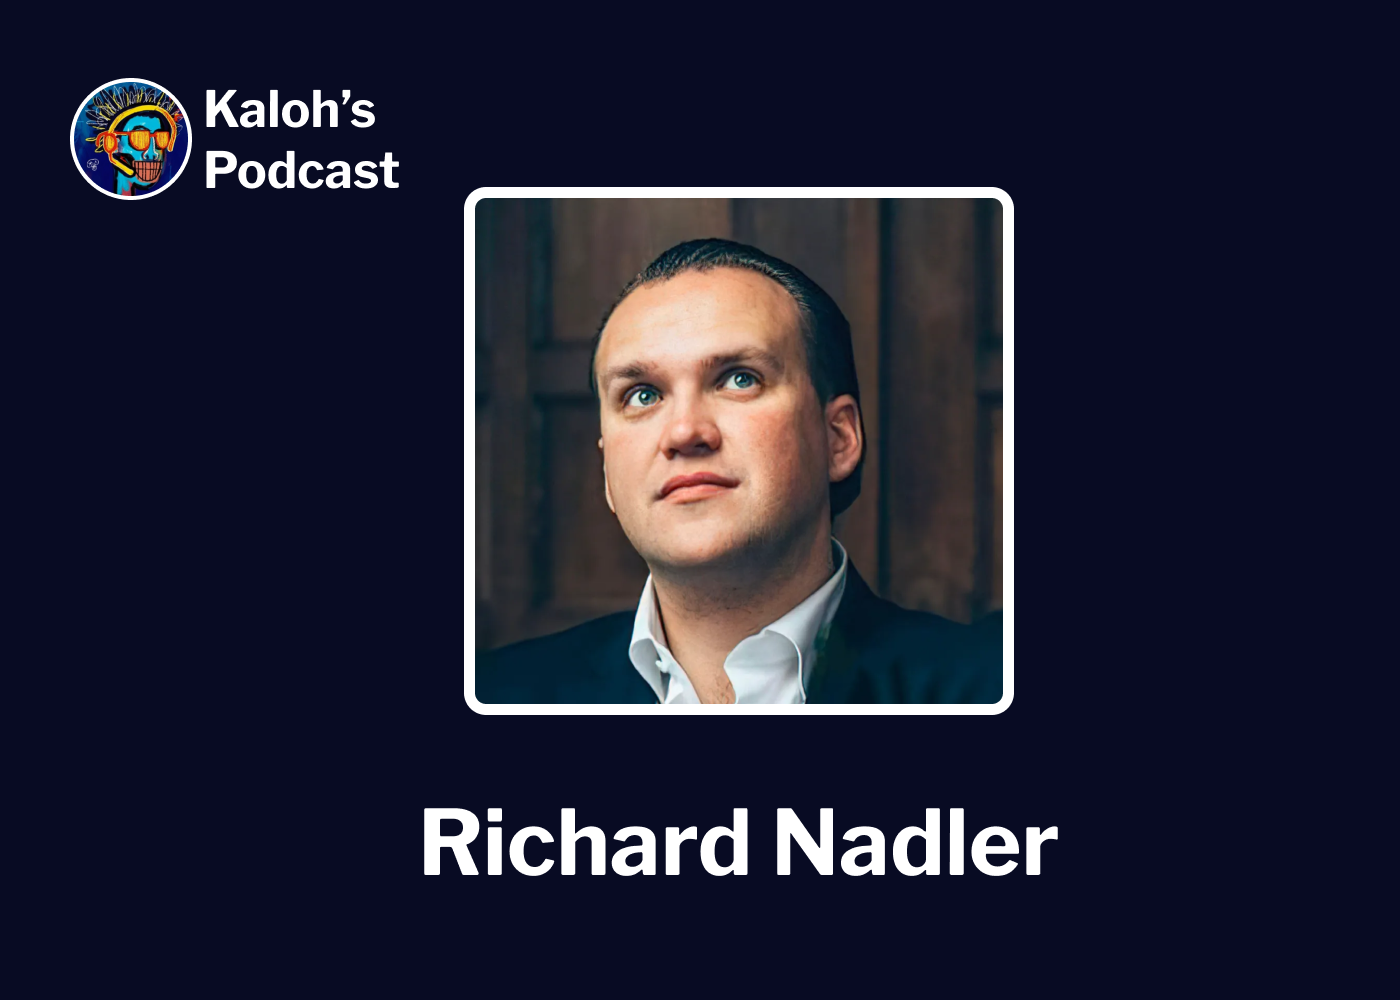 Richard Nadler, Kaloh's Podcast